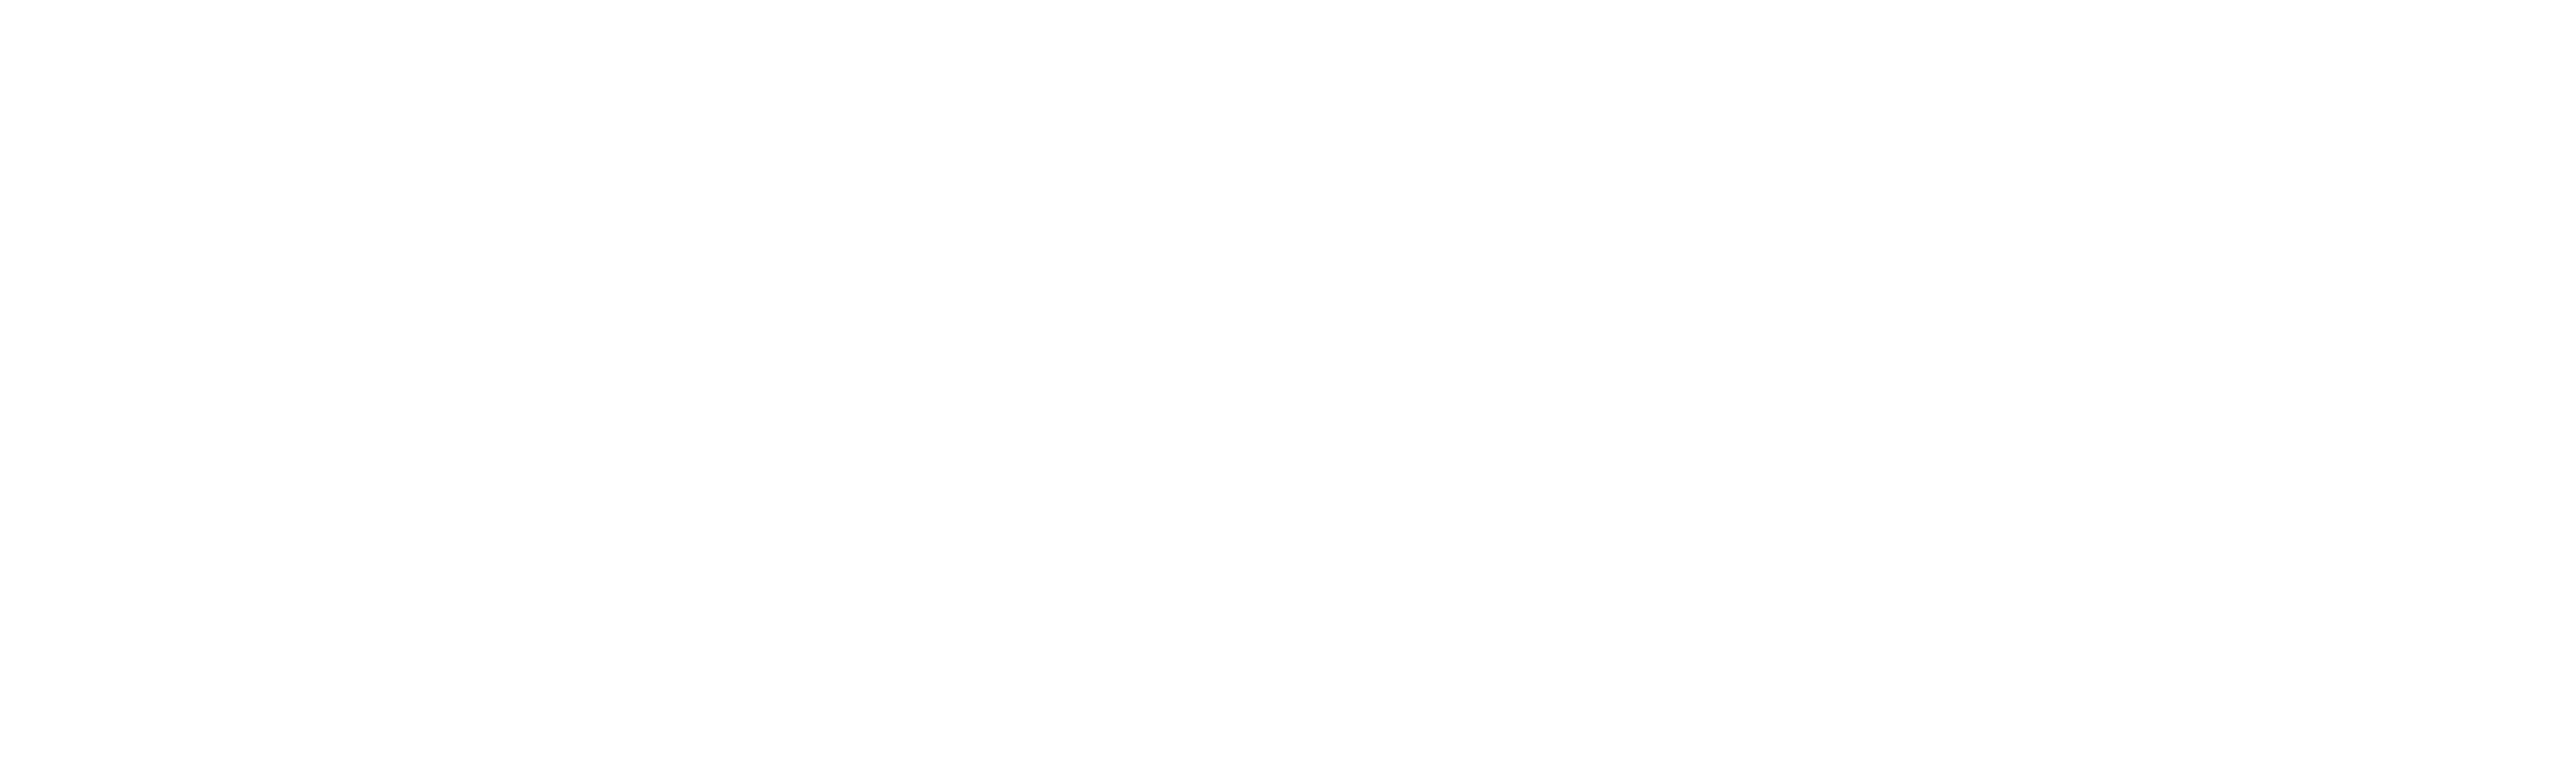 TCGEO-RO Infraestrutura de Dados Espaciais